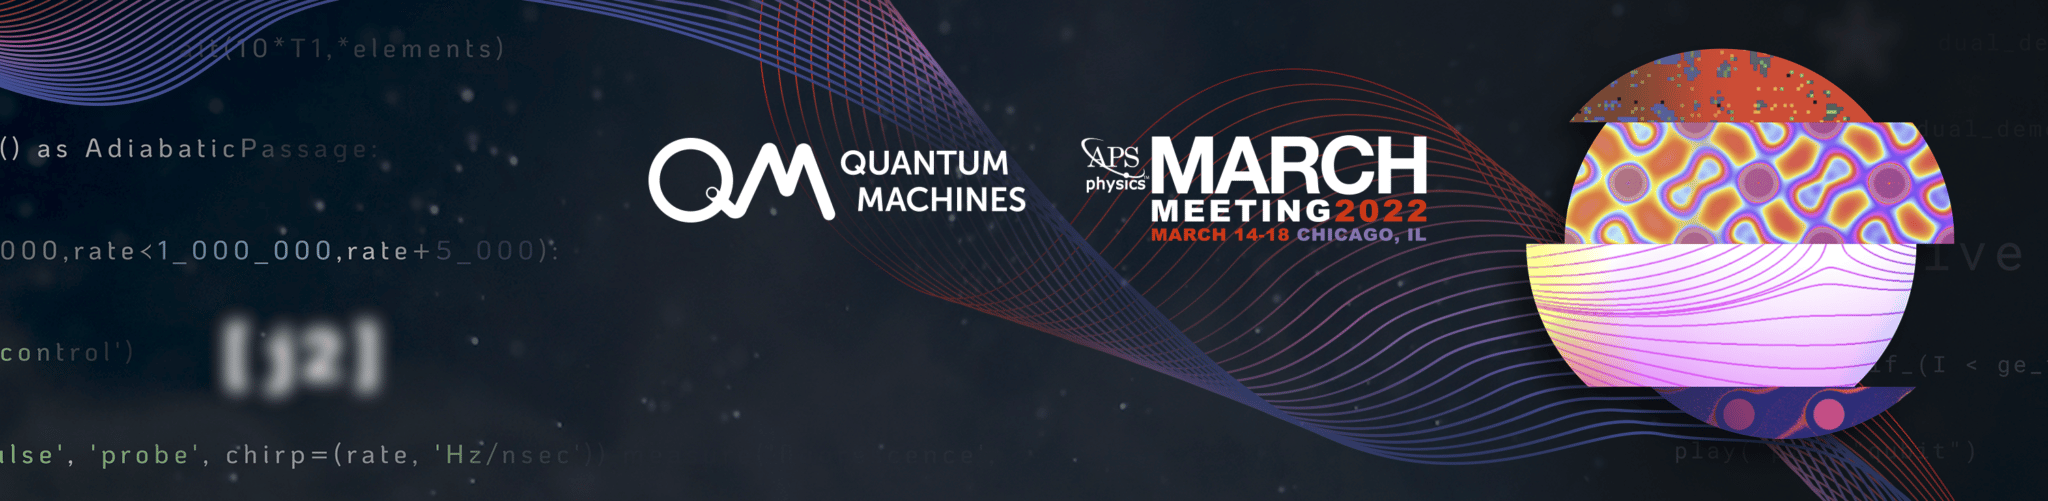 Quantum Machines at APS March Meeting 2022